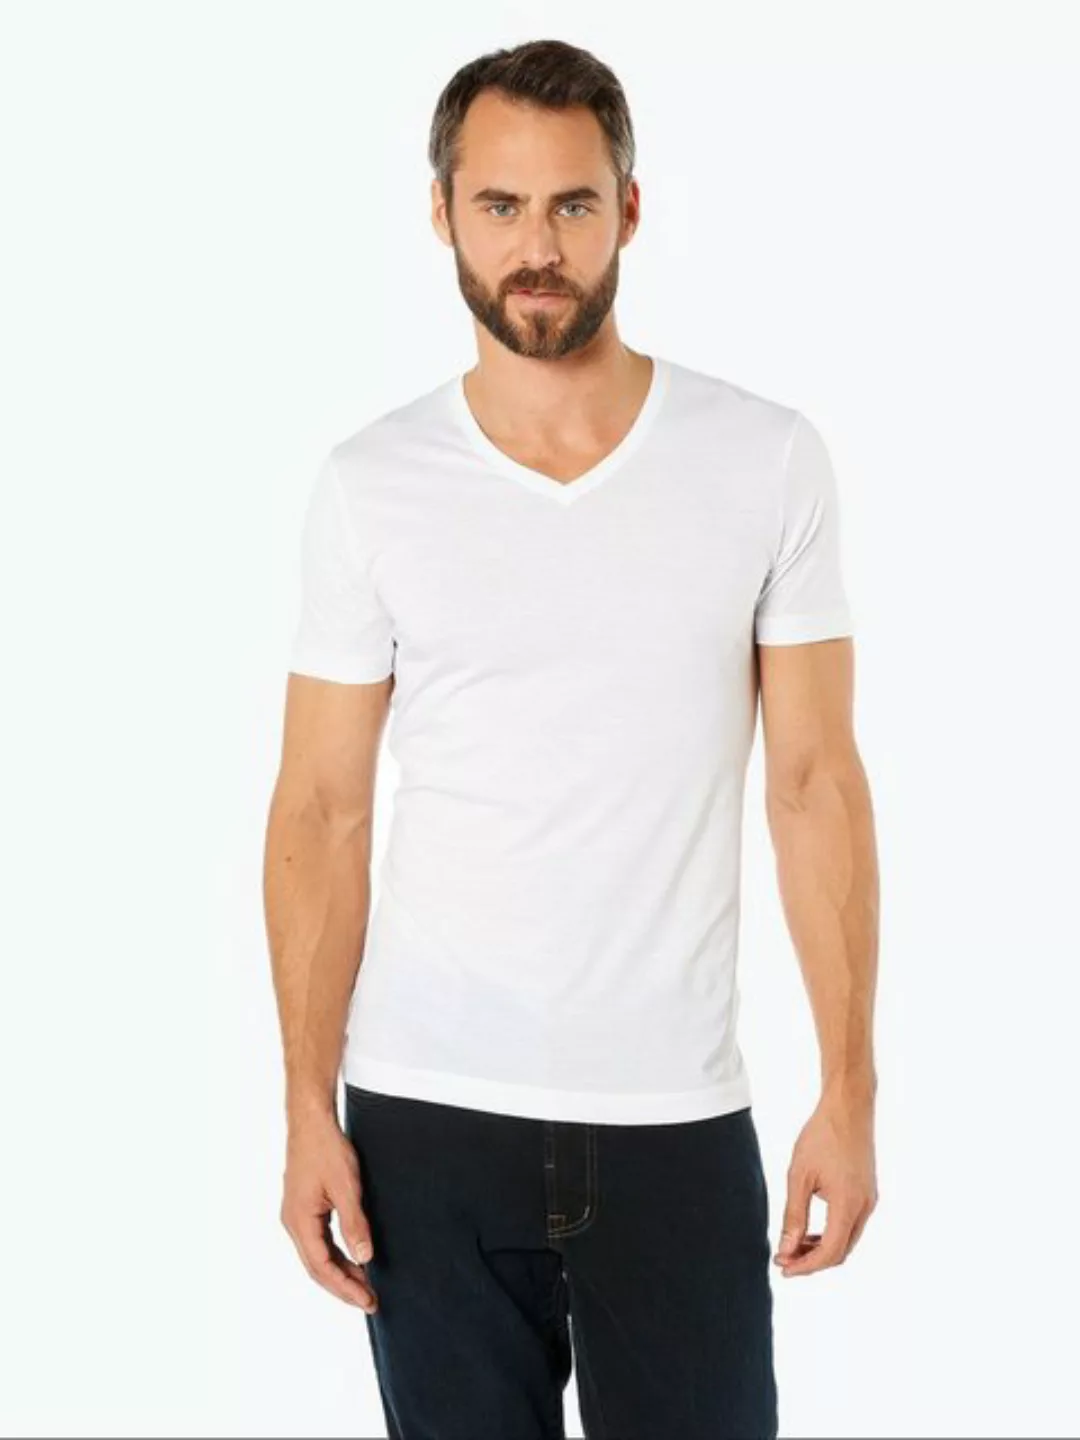 RAGMAN T-Shirt 2er Pack 48000/006 günstig online kaufen